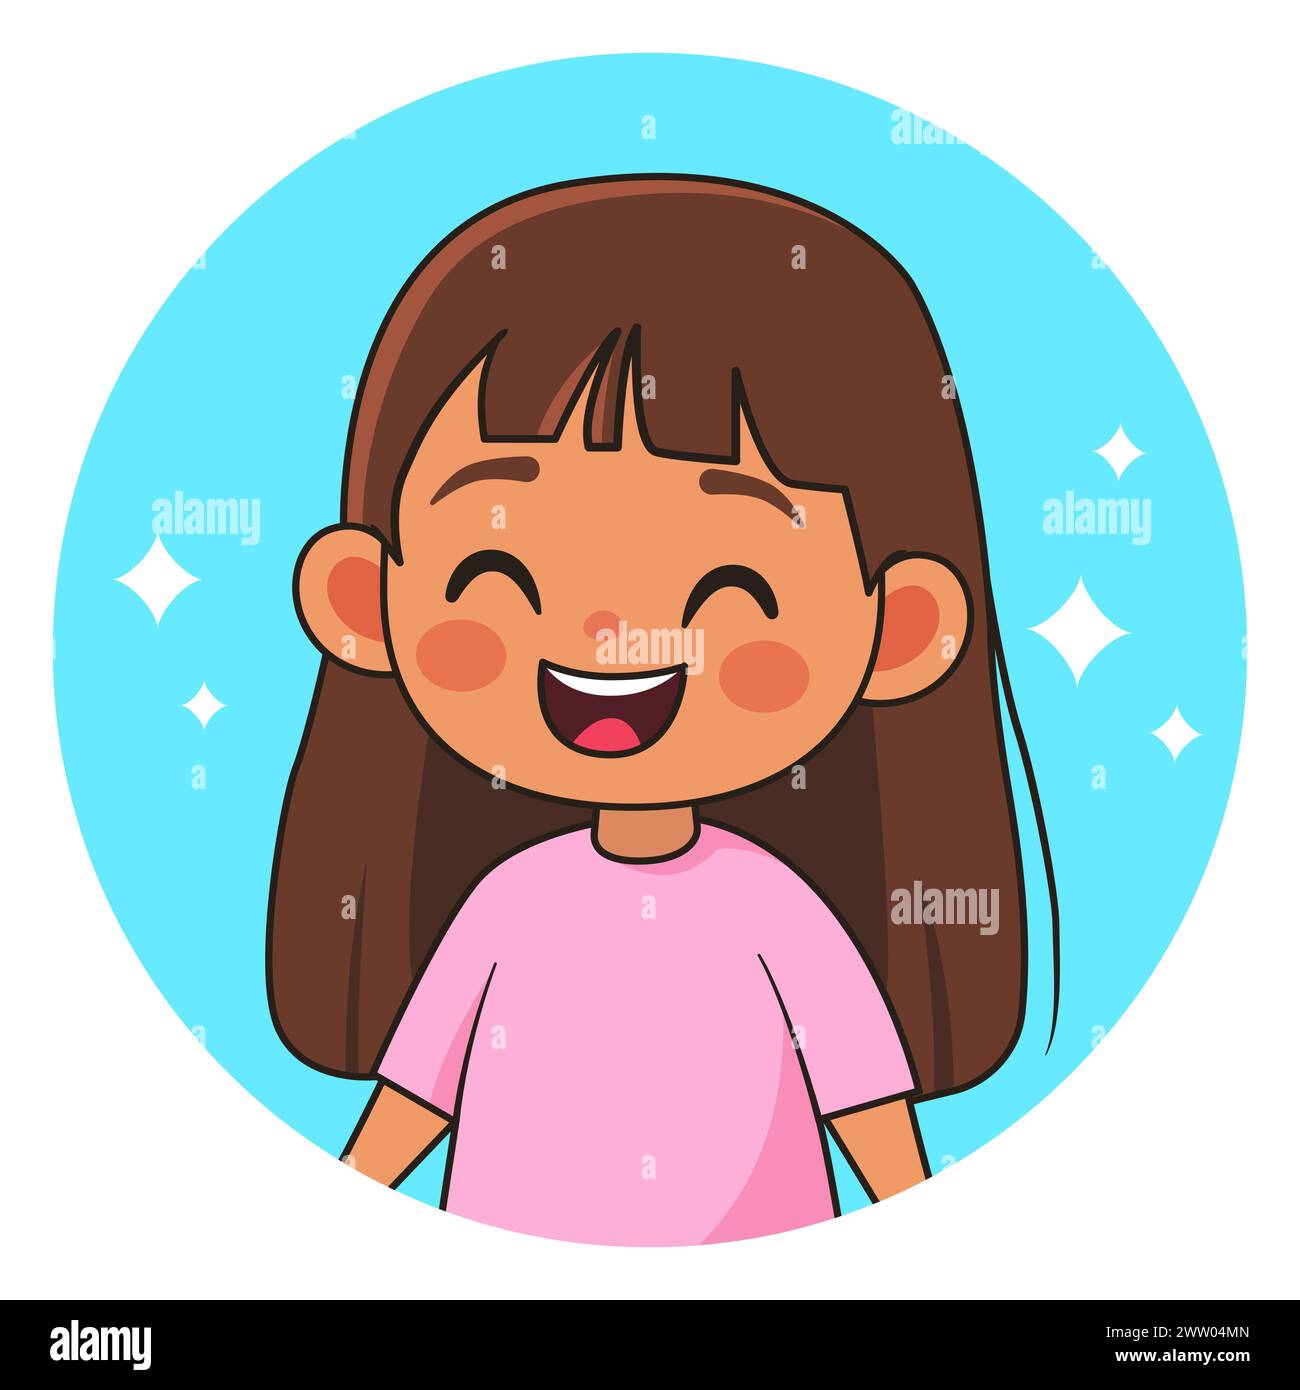 Fille souriante. Enfant heureux. Avatar pour les réseaux sociaux. Illustration vectorielle. Illustration de Vecteur